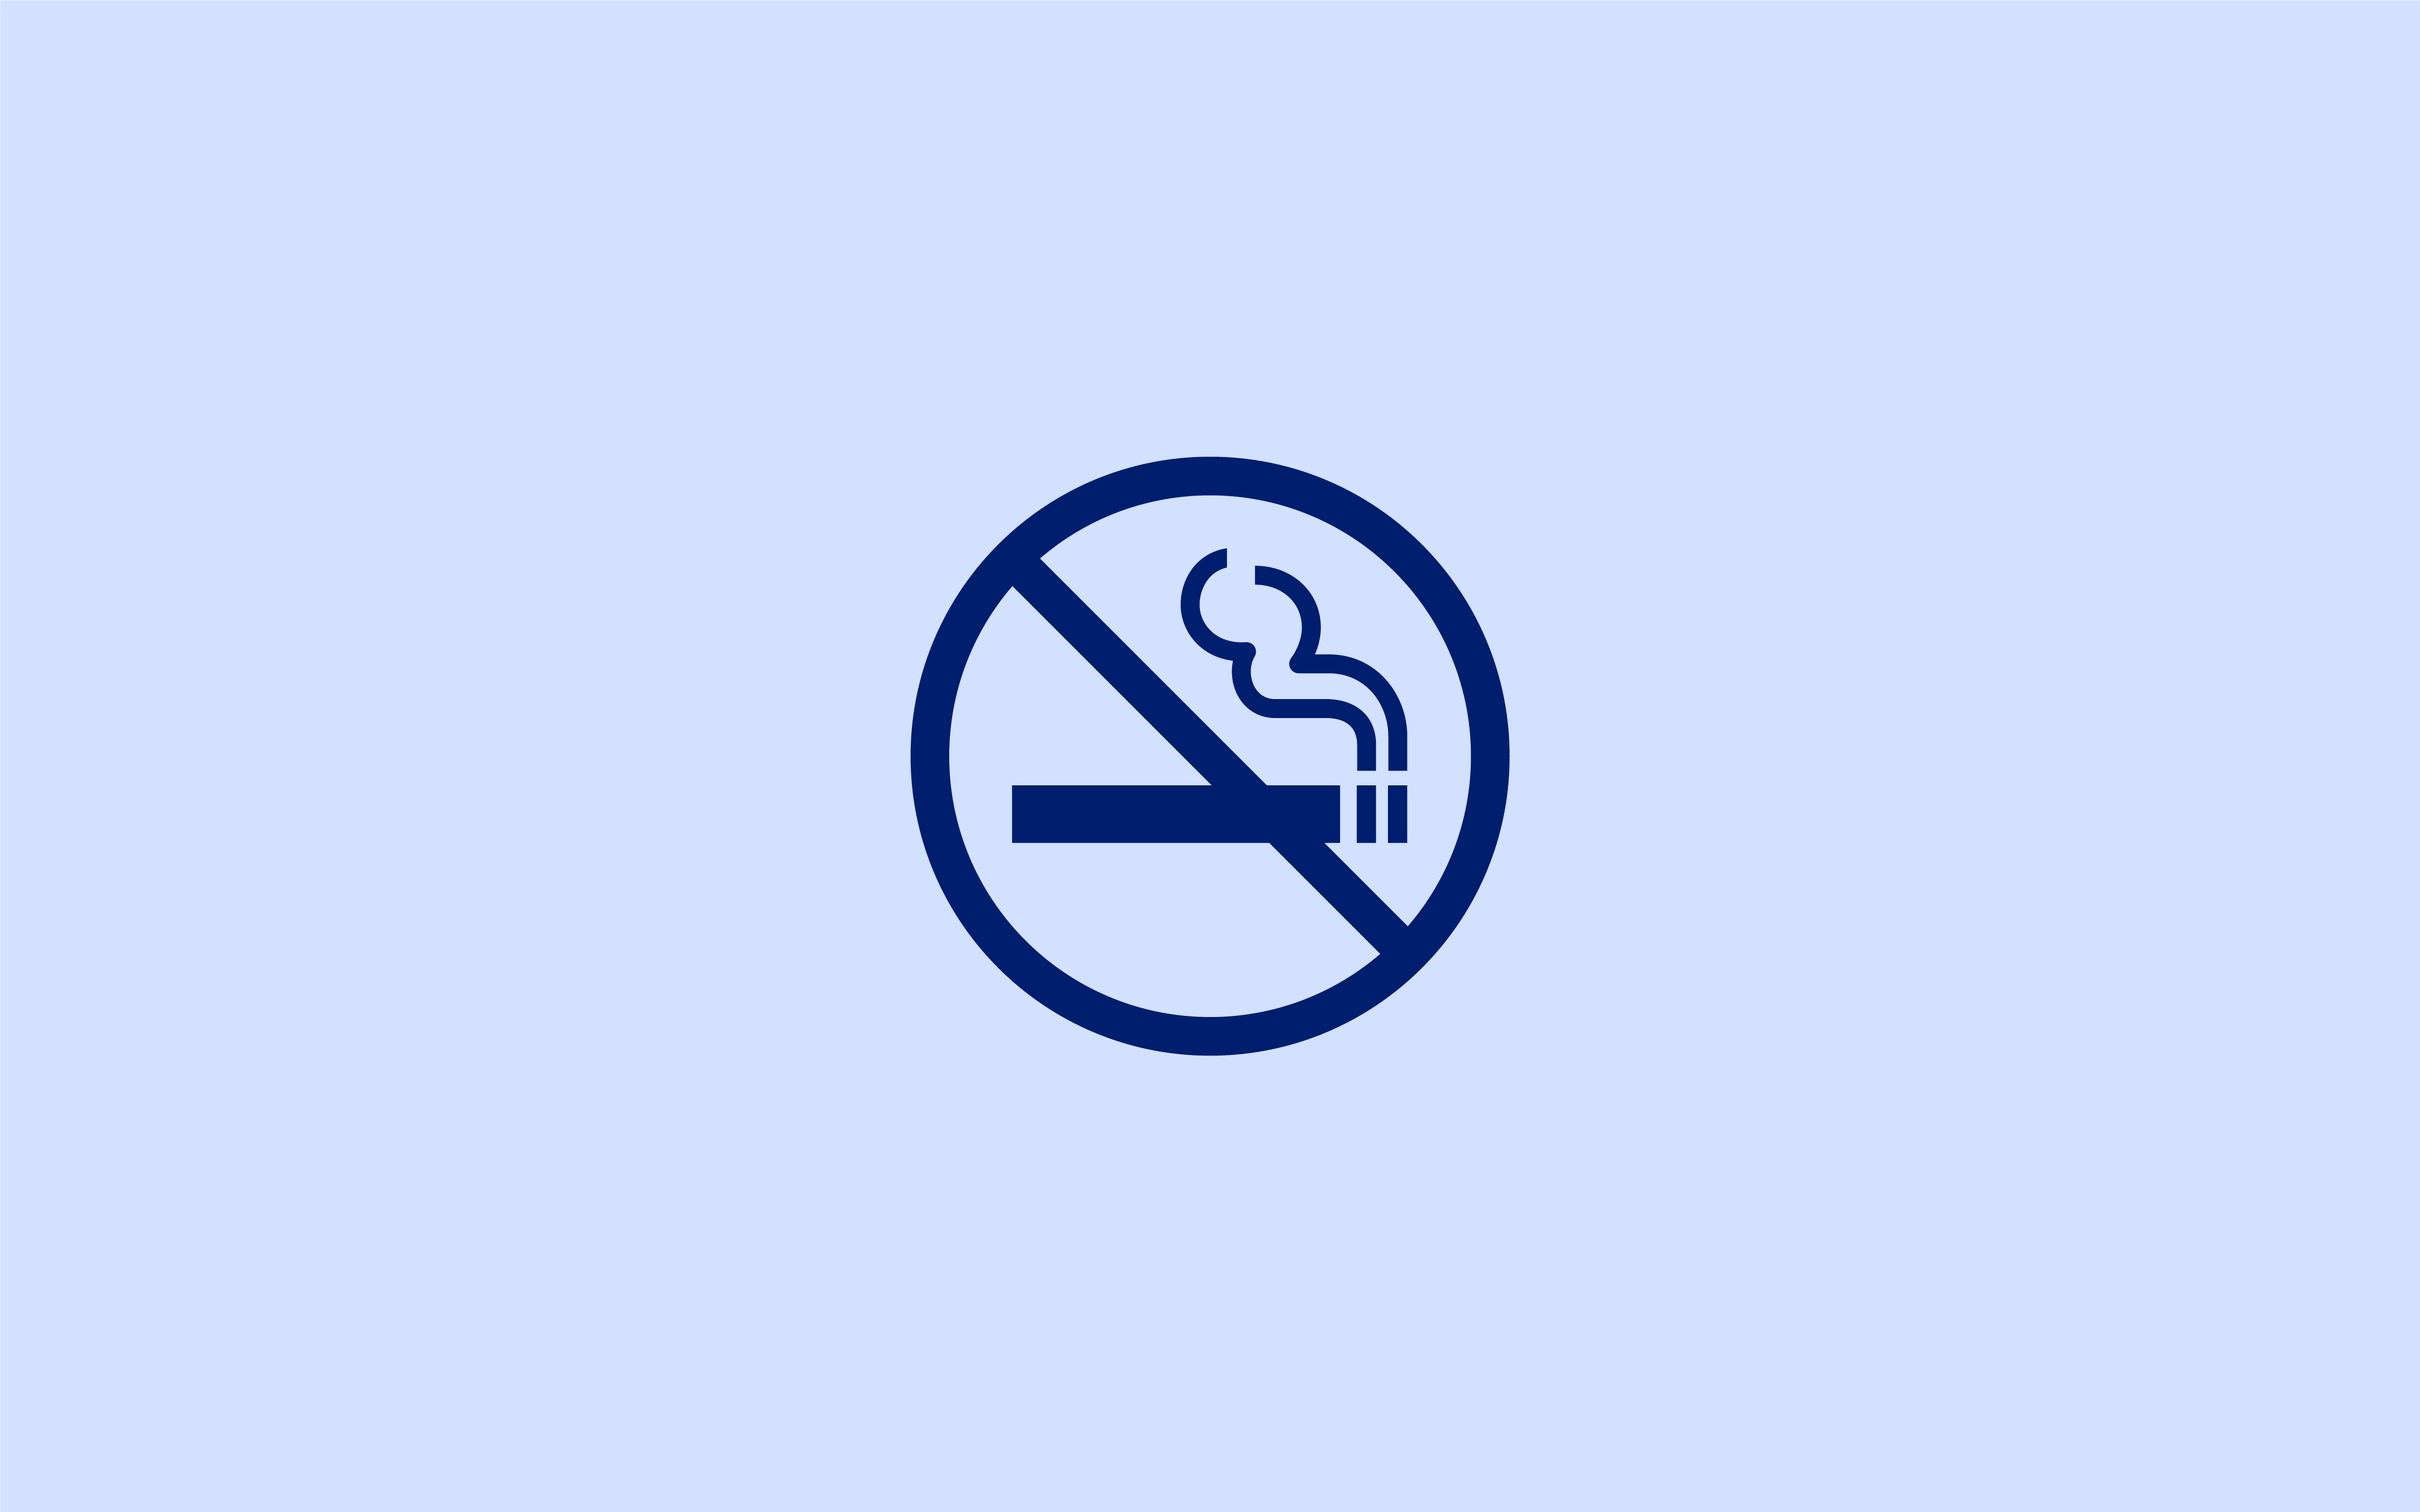 Rygning forbudt ikon, cigaret med streg over